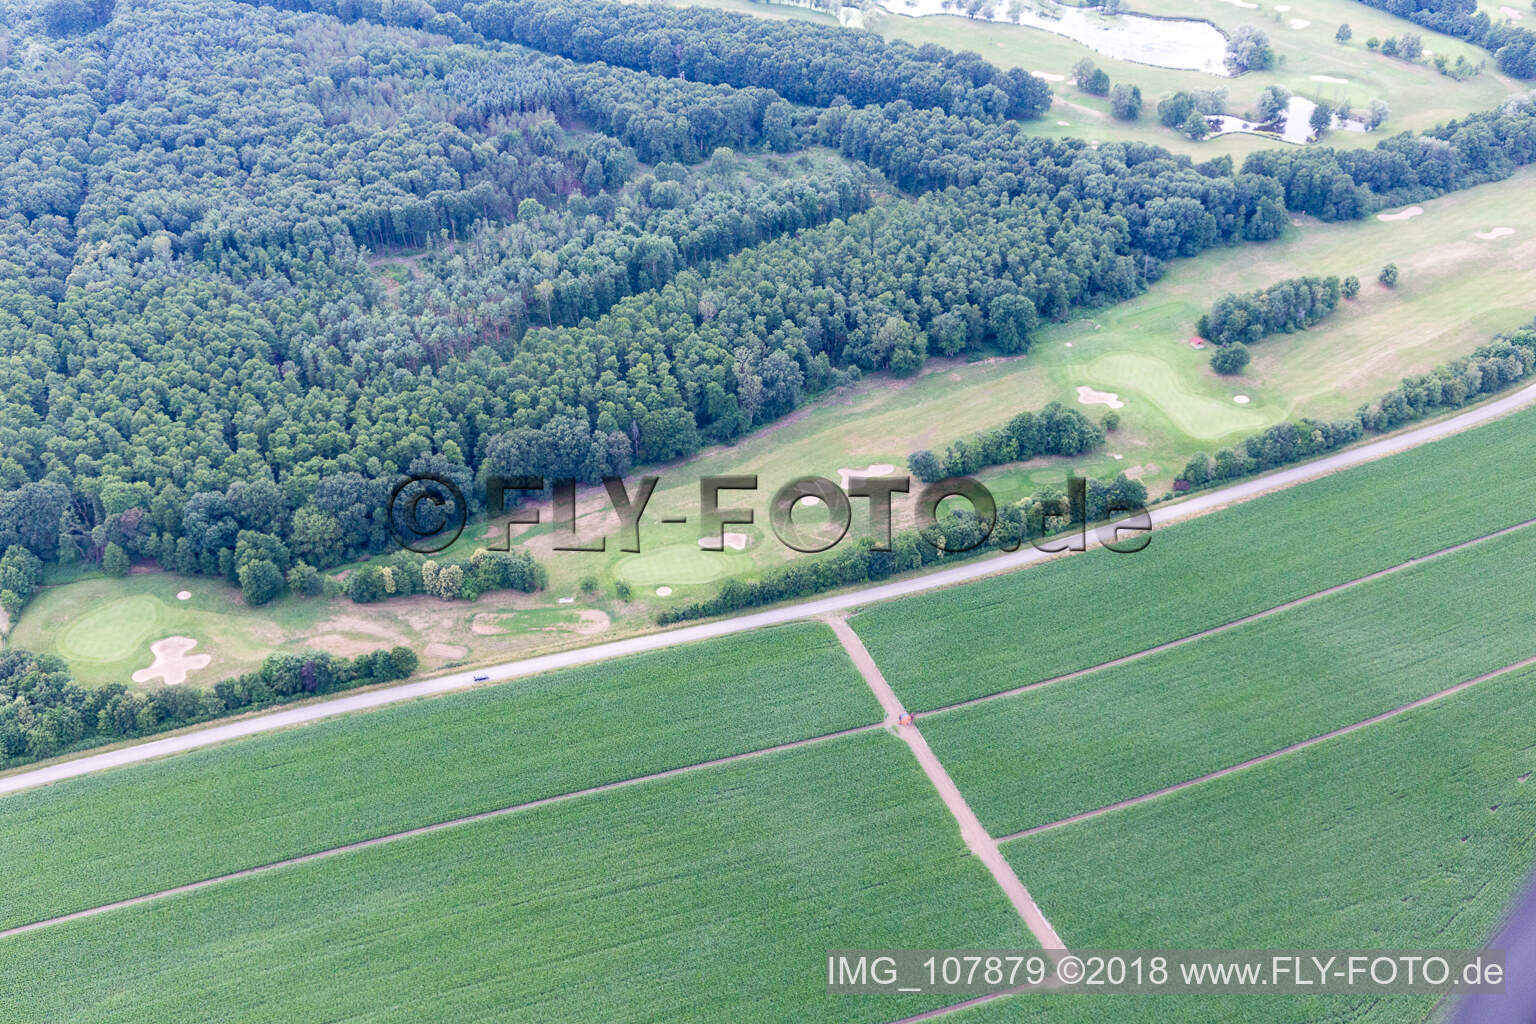 Vue aérienne de Club de golf à Soufflenheim dans le département Bas Rhin, France